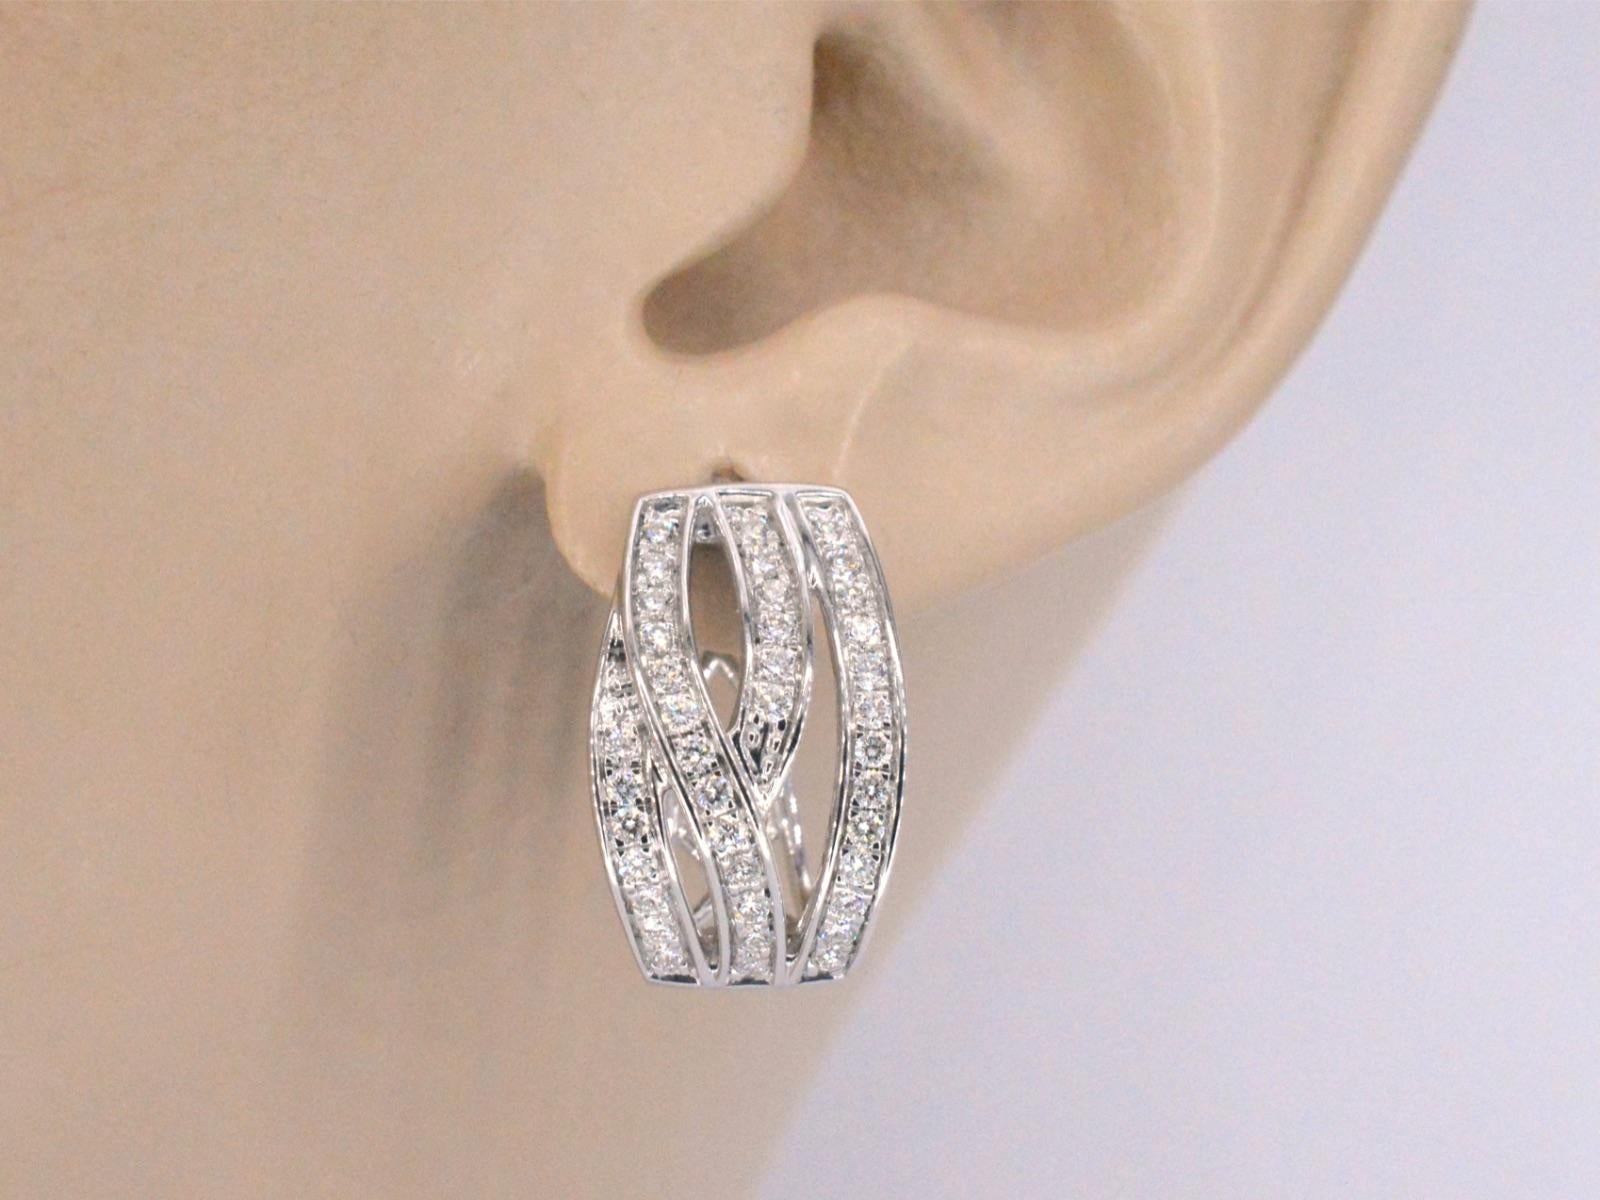 Ces boucles d'oreilles en or blanc sont un superbe bijou qui présente des diamants de taille brillante dans un design unique et moderne. Les diamants sont sertis de manière experte dans l'or blanc pour créer un look homogène et sophistiqué, parfait